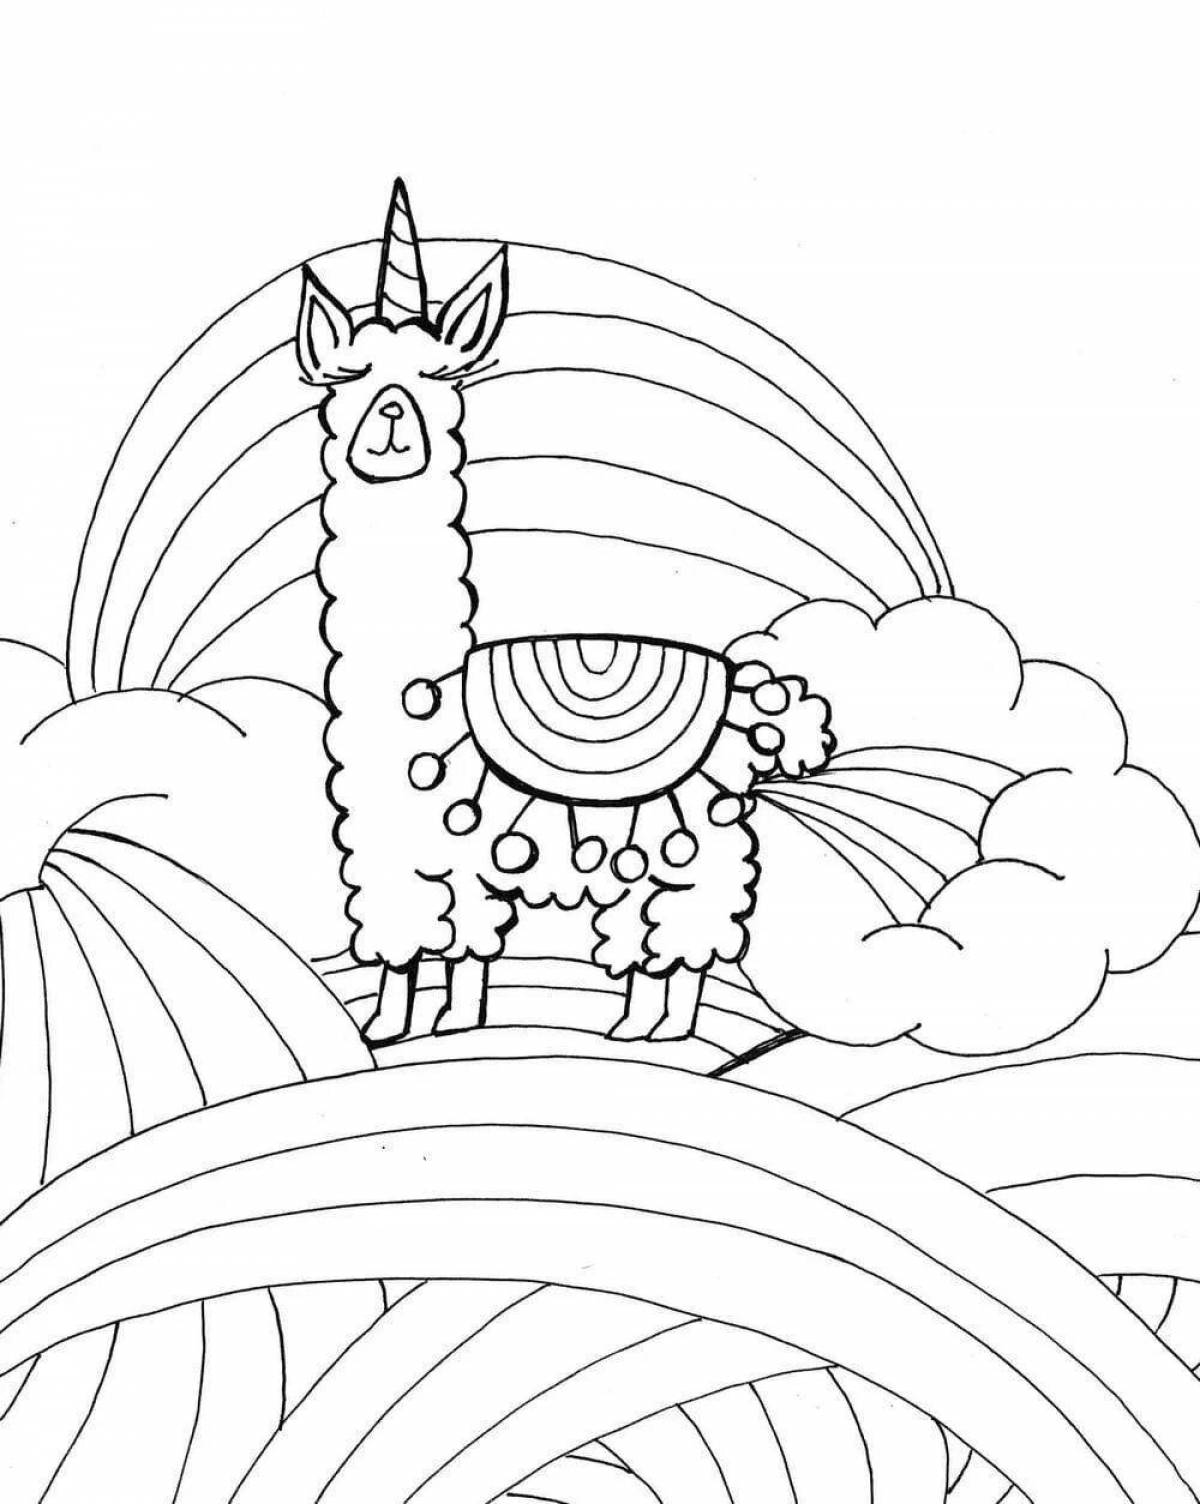 Fun coloring llama unicorn